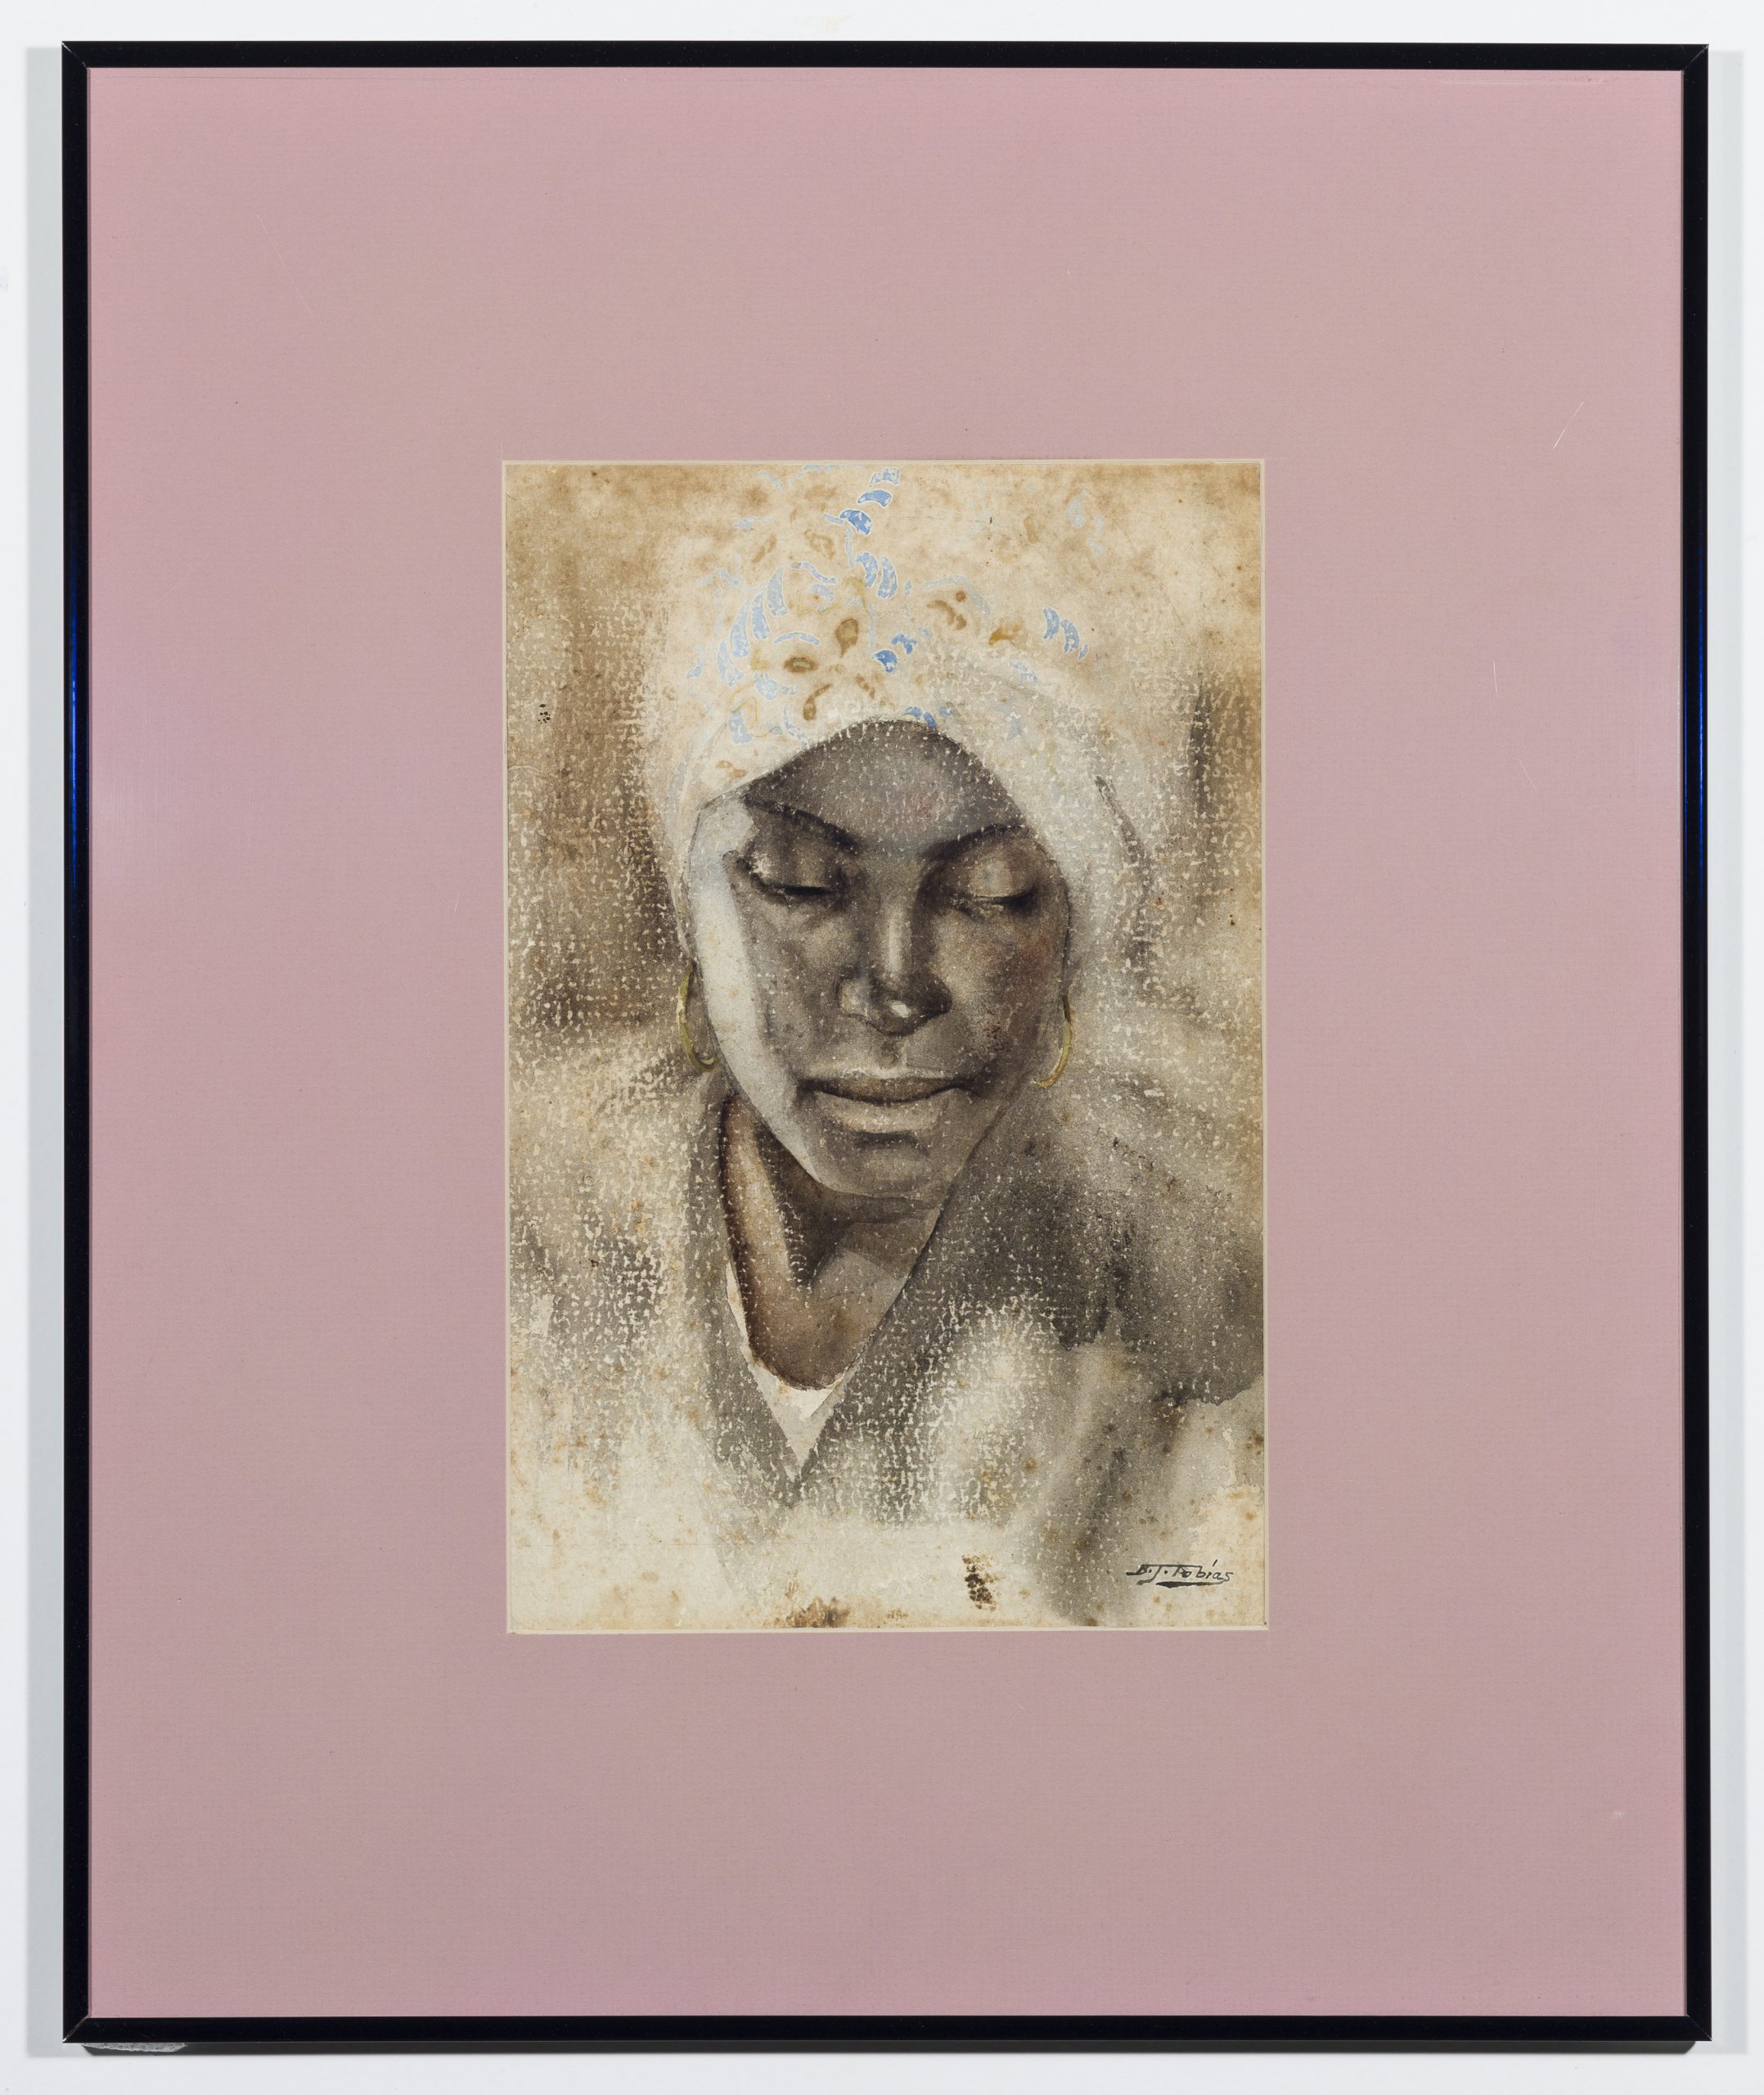 Retrato de mulher, Benedito Jose Tobias, 1934, quadro, retrato, mulher, mulher morena, de pele parda, usando um pano cobrindo sua cabeça, centralizado, ao redor moldura rosada.